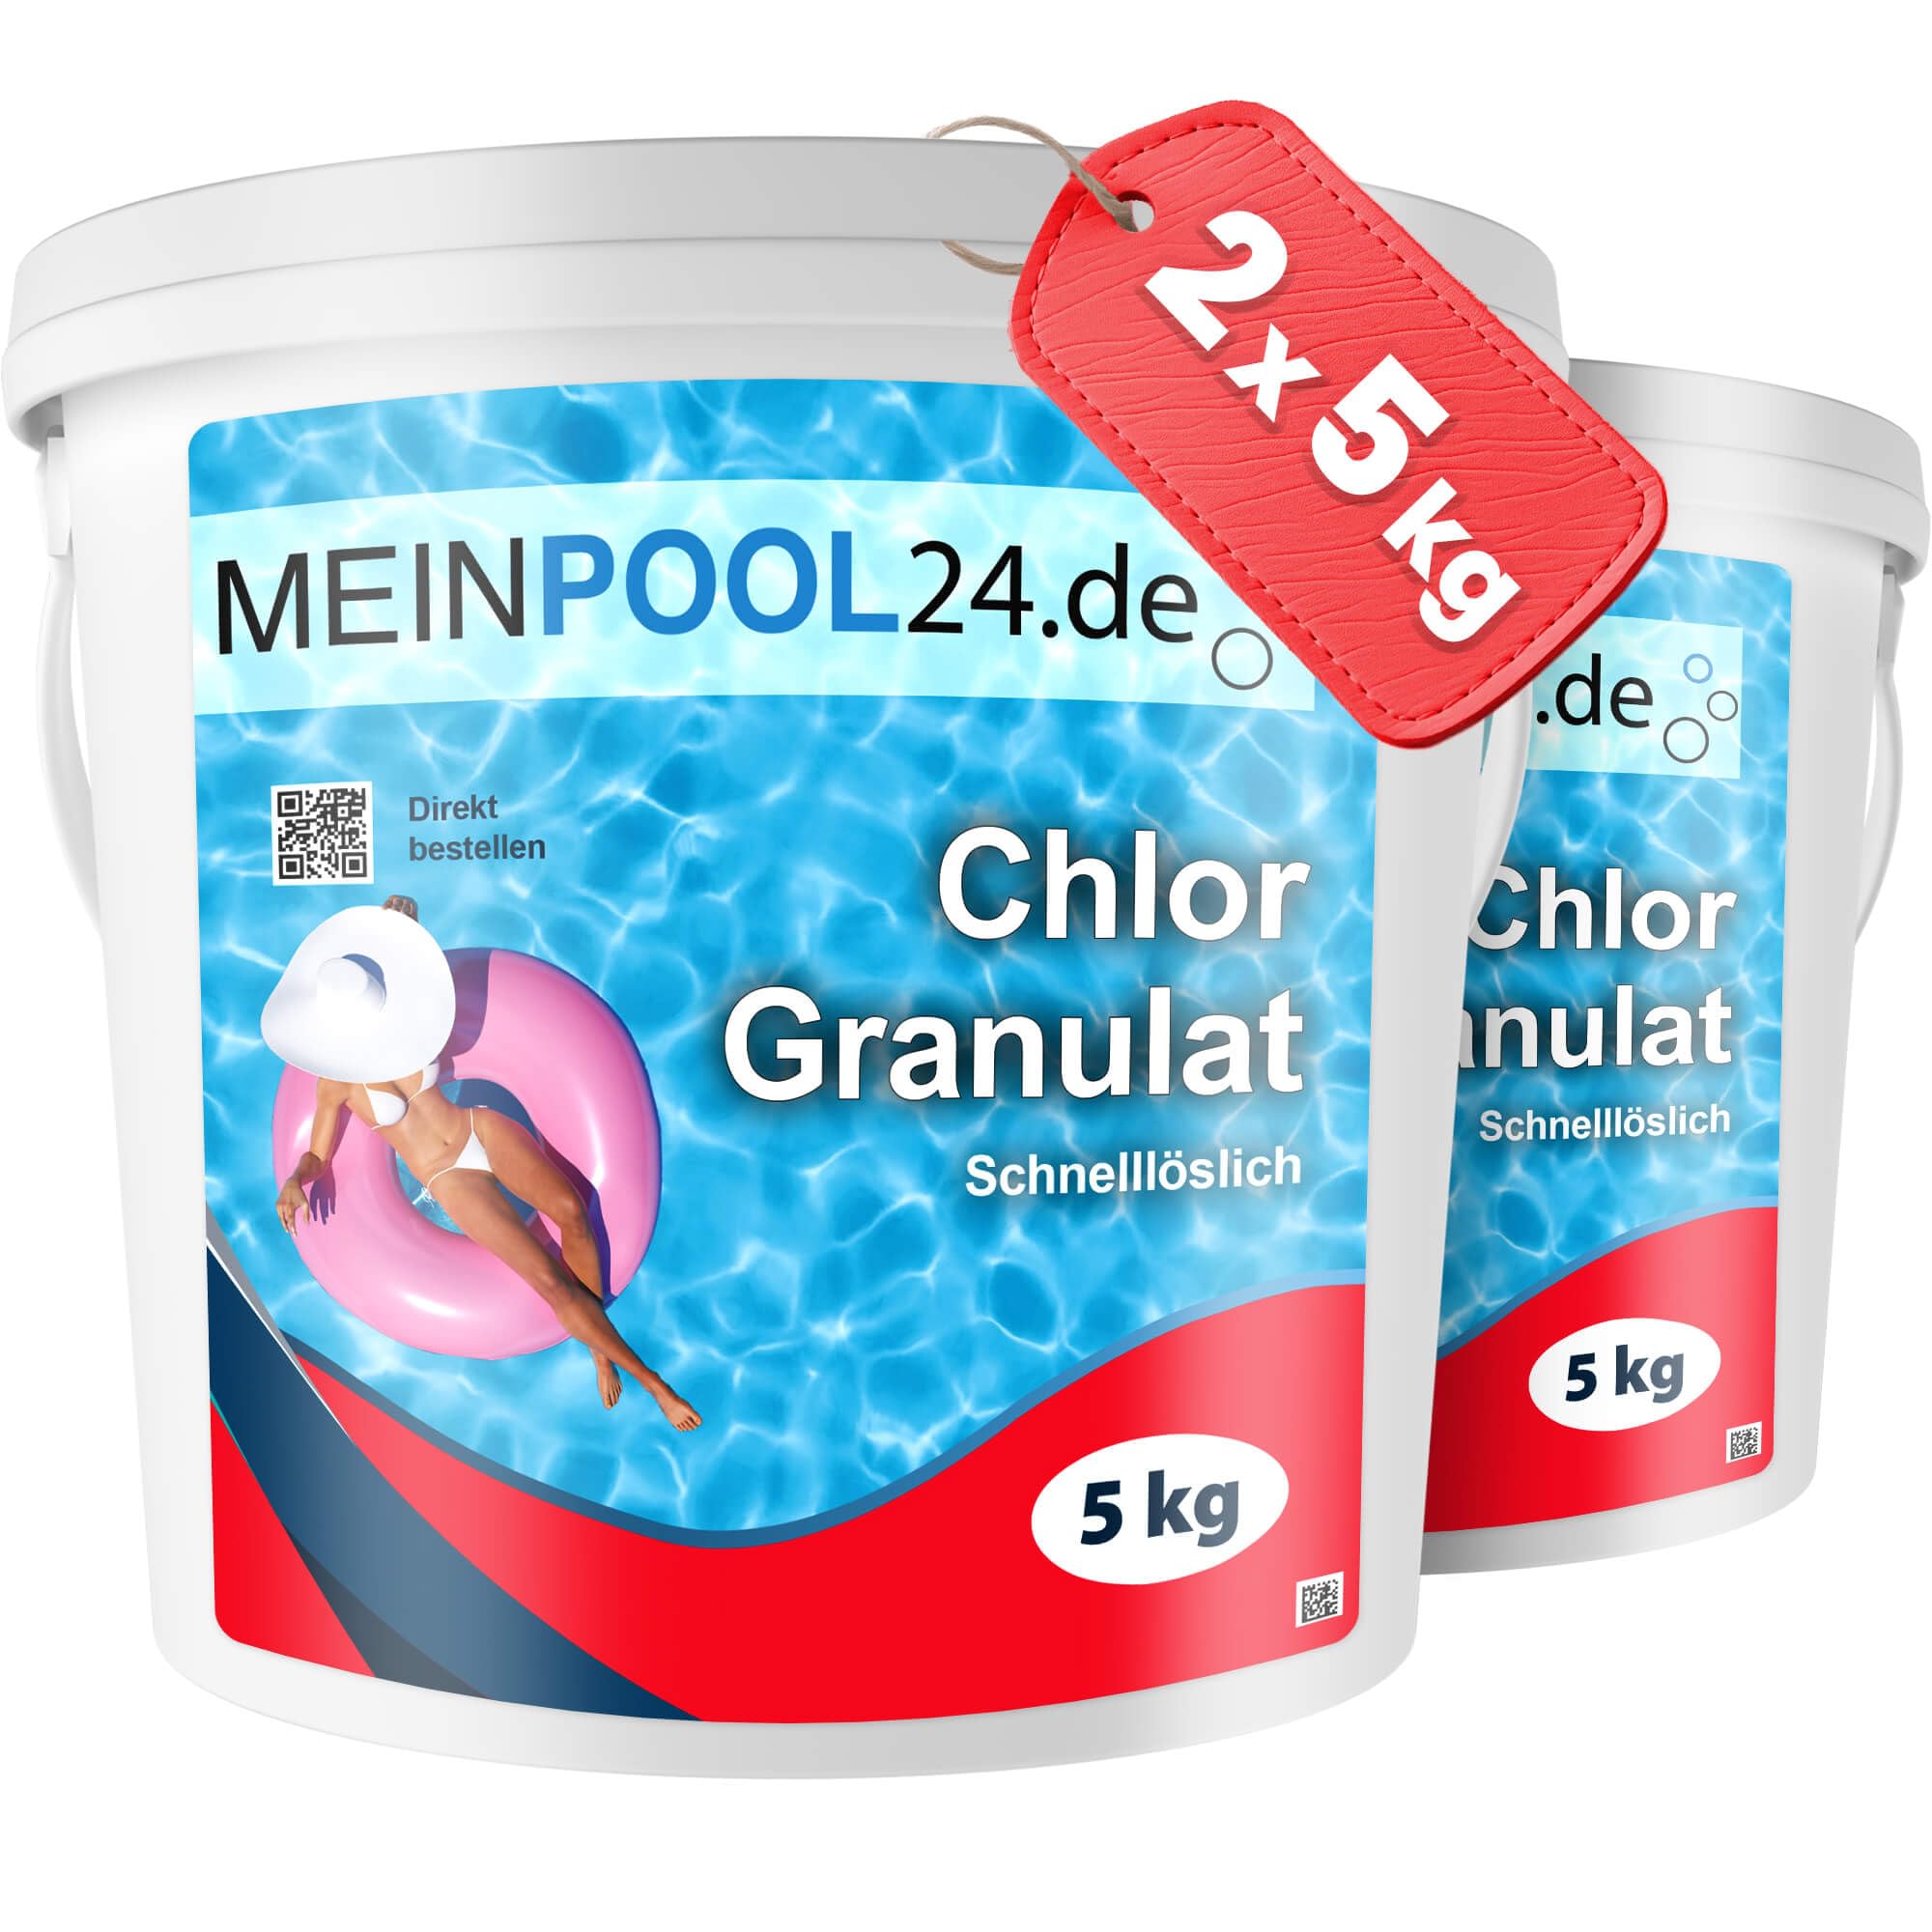 2 x 5 kg Chlorgranulat für den Swimmingpool Marke Meinpool24.de